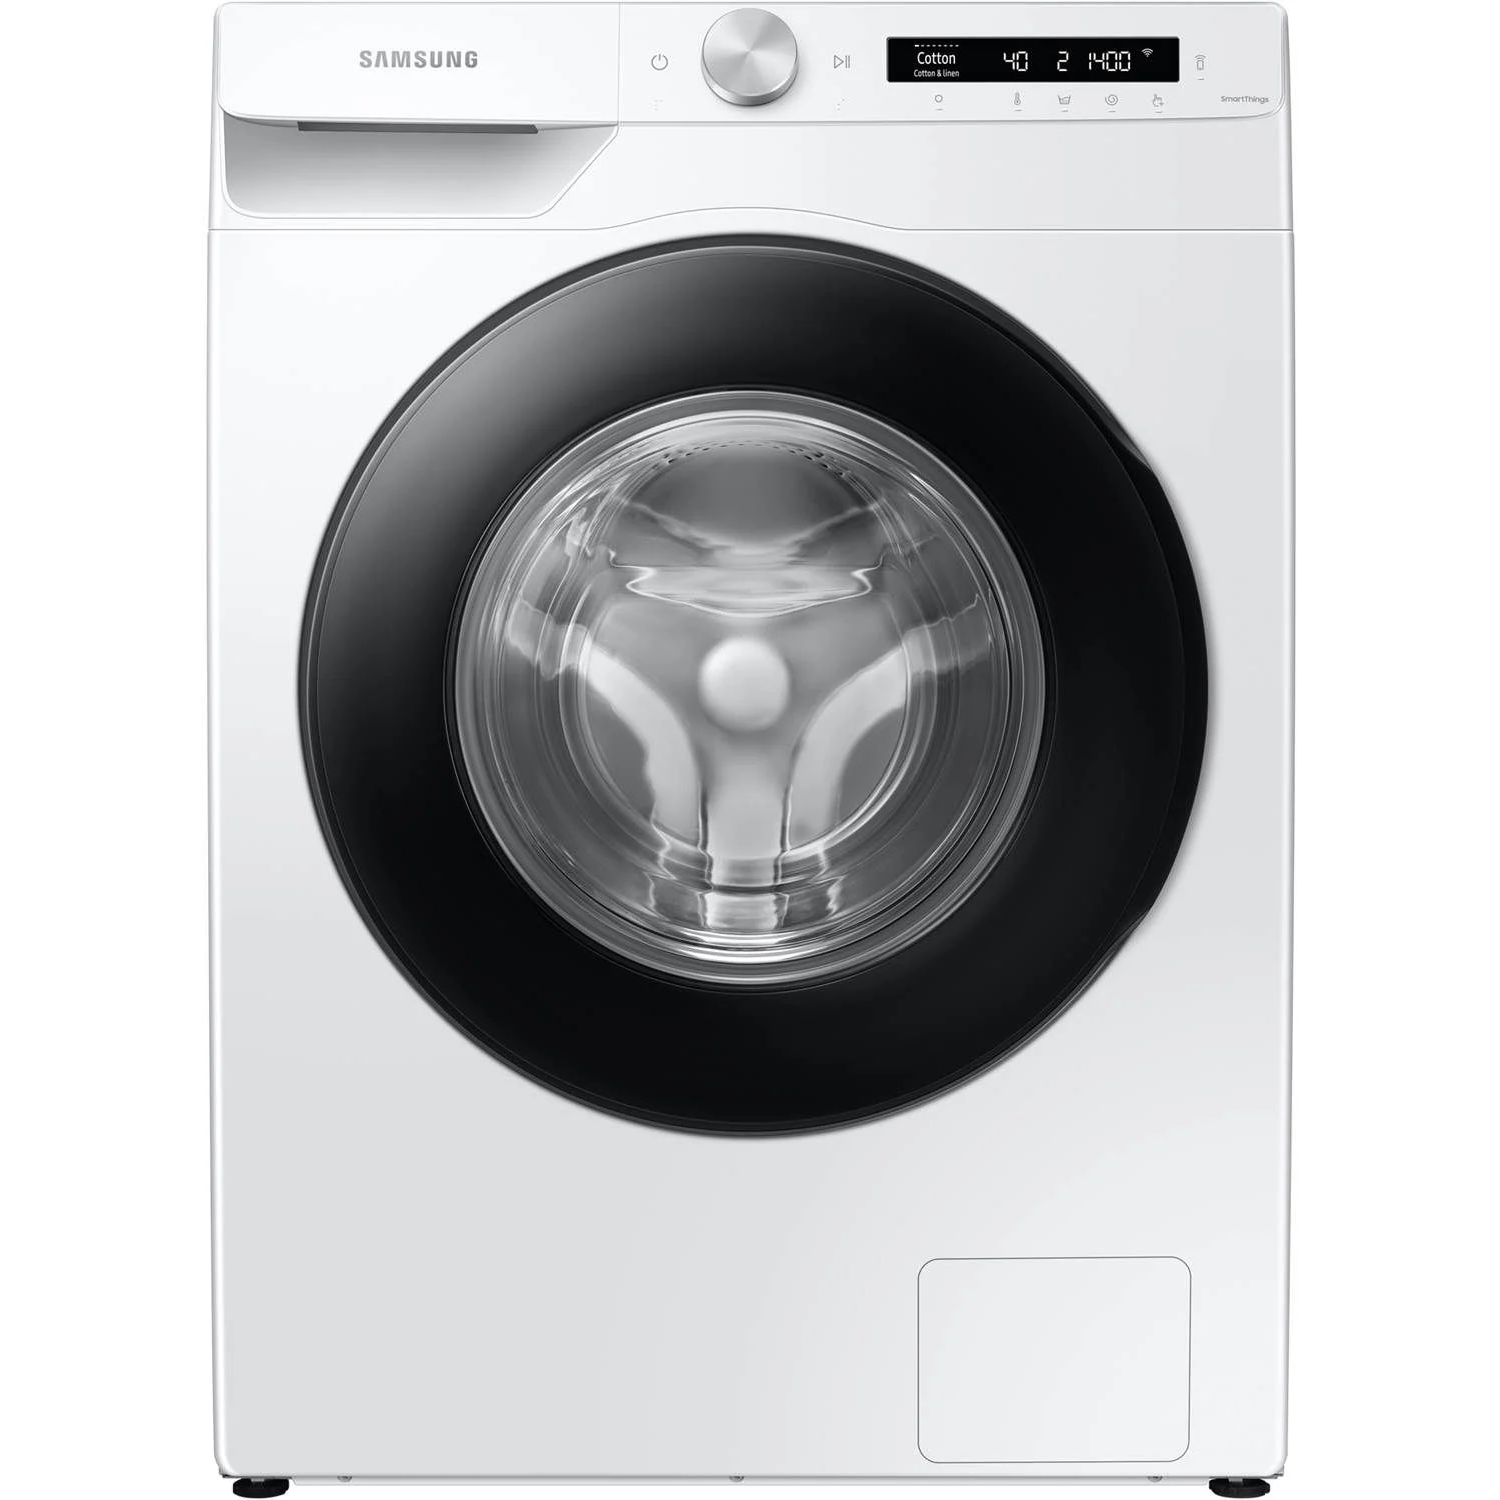 8806095210919 Samsung WW93T504CAW/S4 - Frontbetjent vaskemaskine Hvidevarer,Vaskemaskine,Frontbetjente vaskemaskiner 2190004662 WW93T504CAW/S4